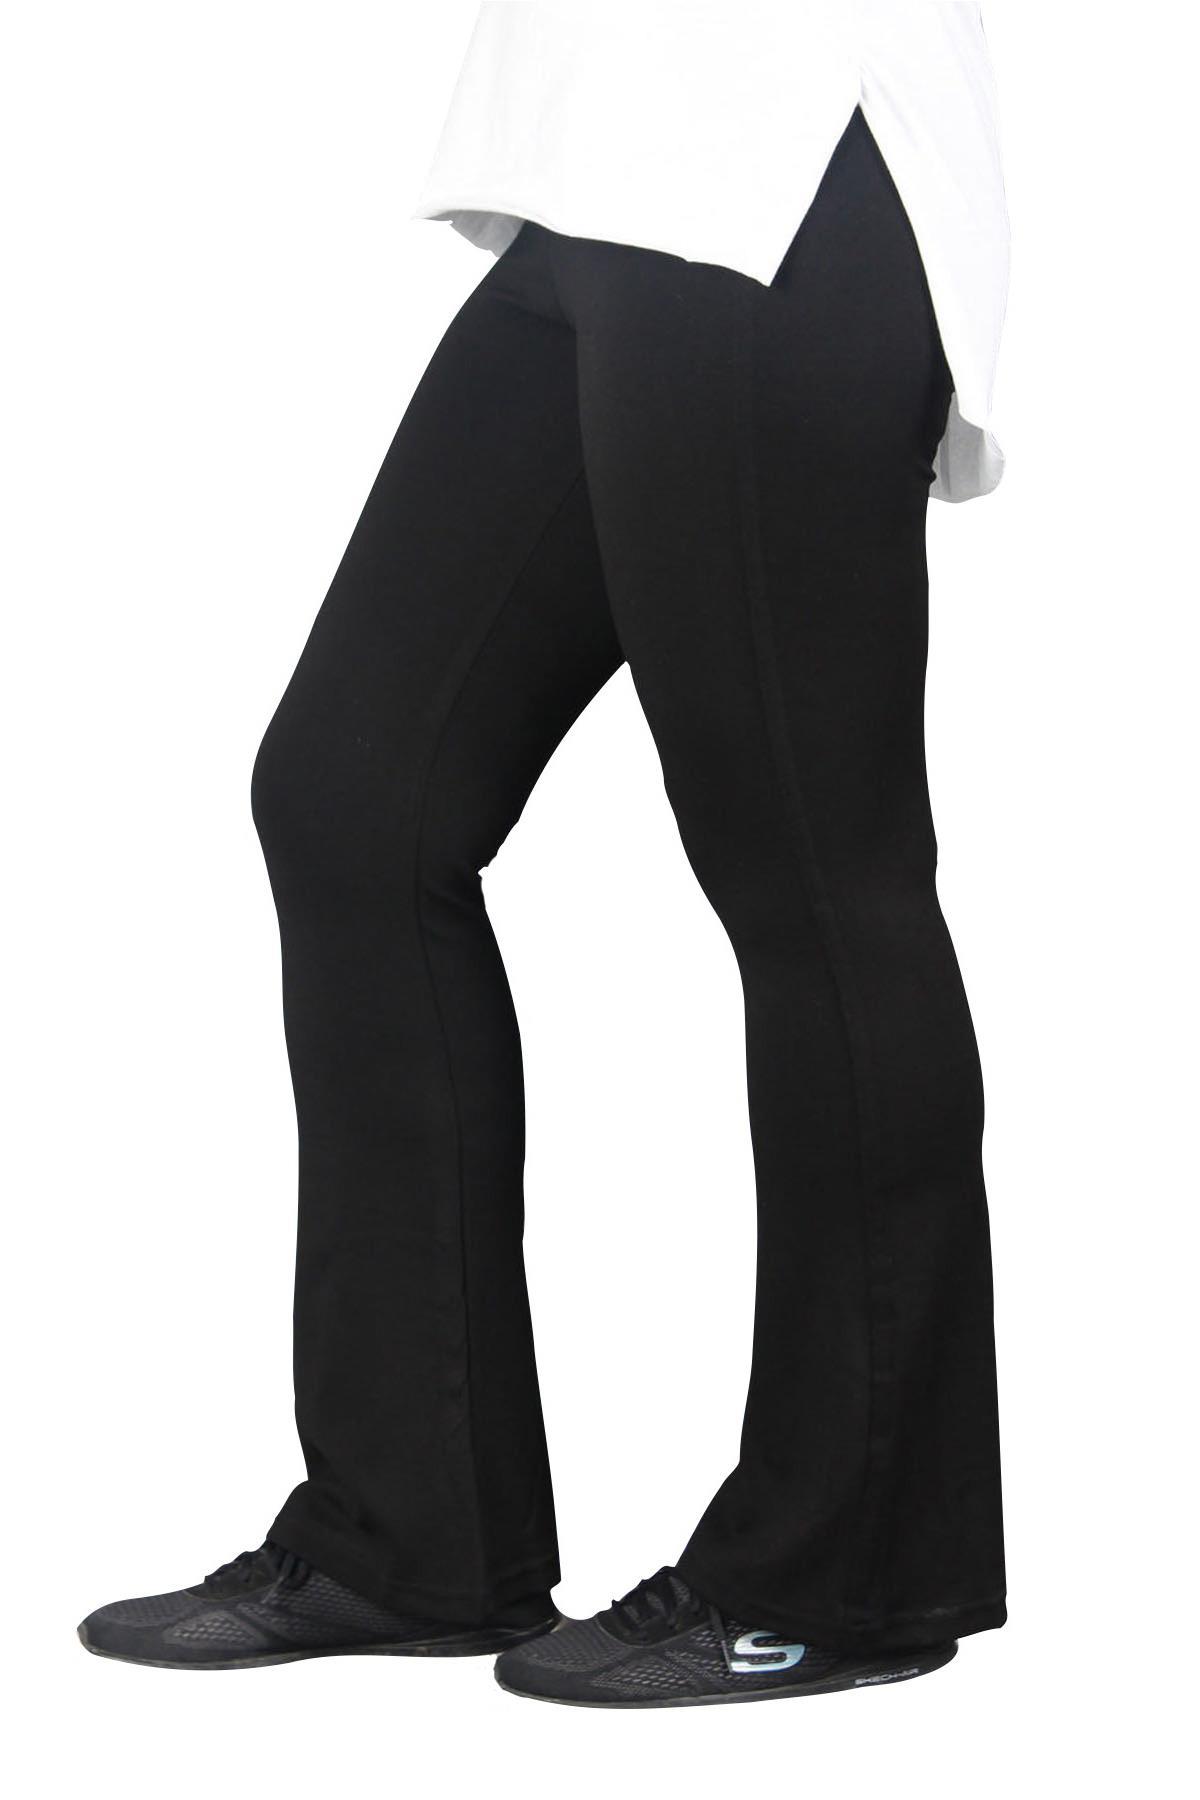 fierte-kadin-buyuk-beden-tayt-etkm001-yuksek-elastik-bel-ispanyol-paca-pantolon-spor-siyah-27518.jpg